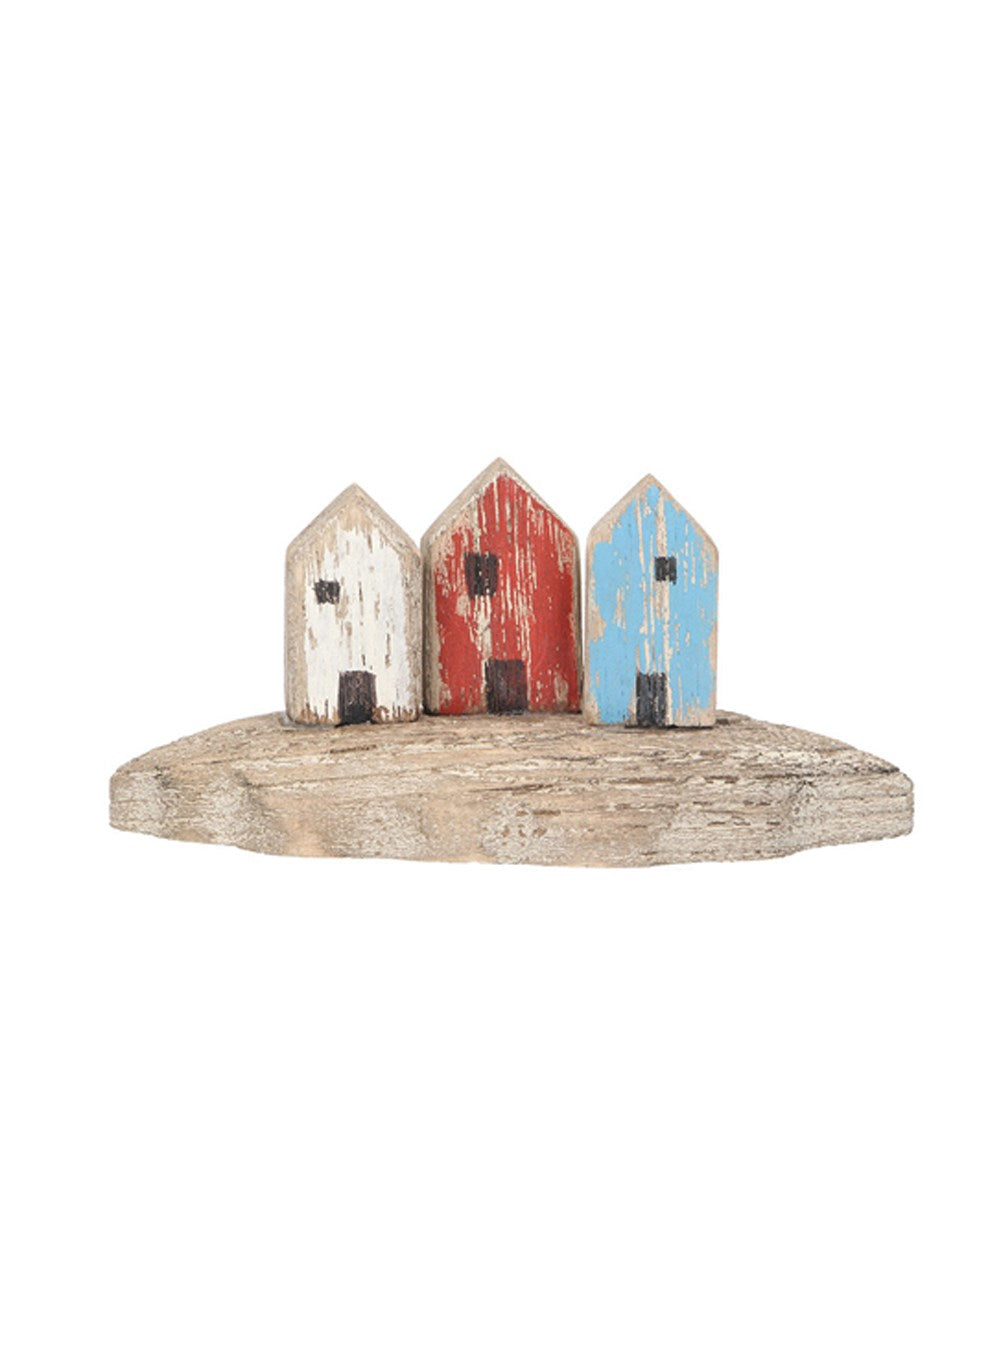 Wooden mini beach hut trio ornament